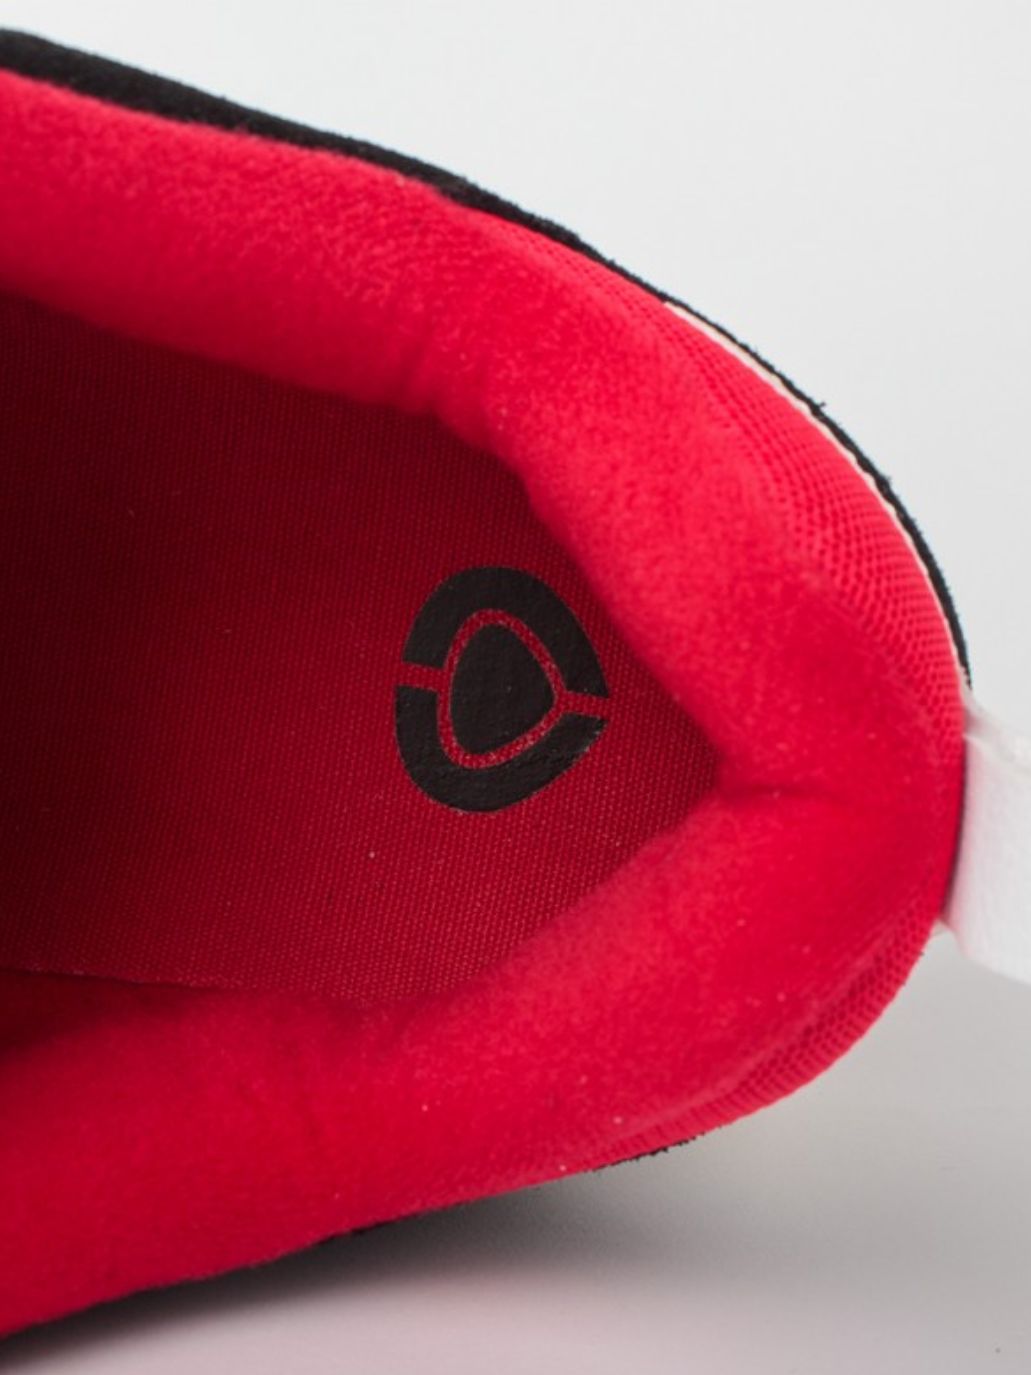 Zapatillas de skate Circa CX201R Black/Red | Calzado | Zapatillas | surfdevils.com